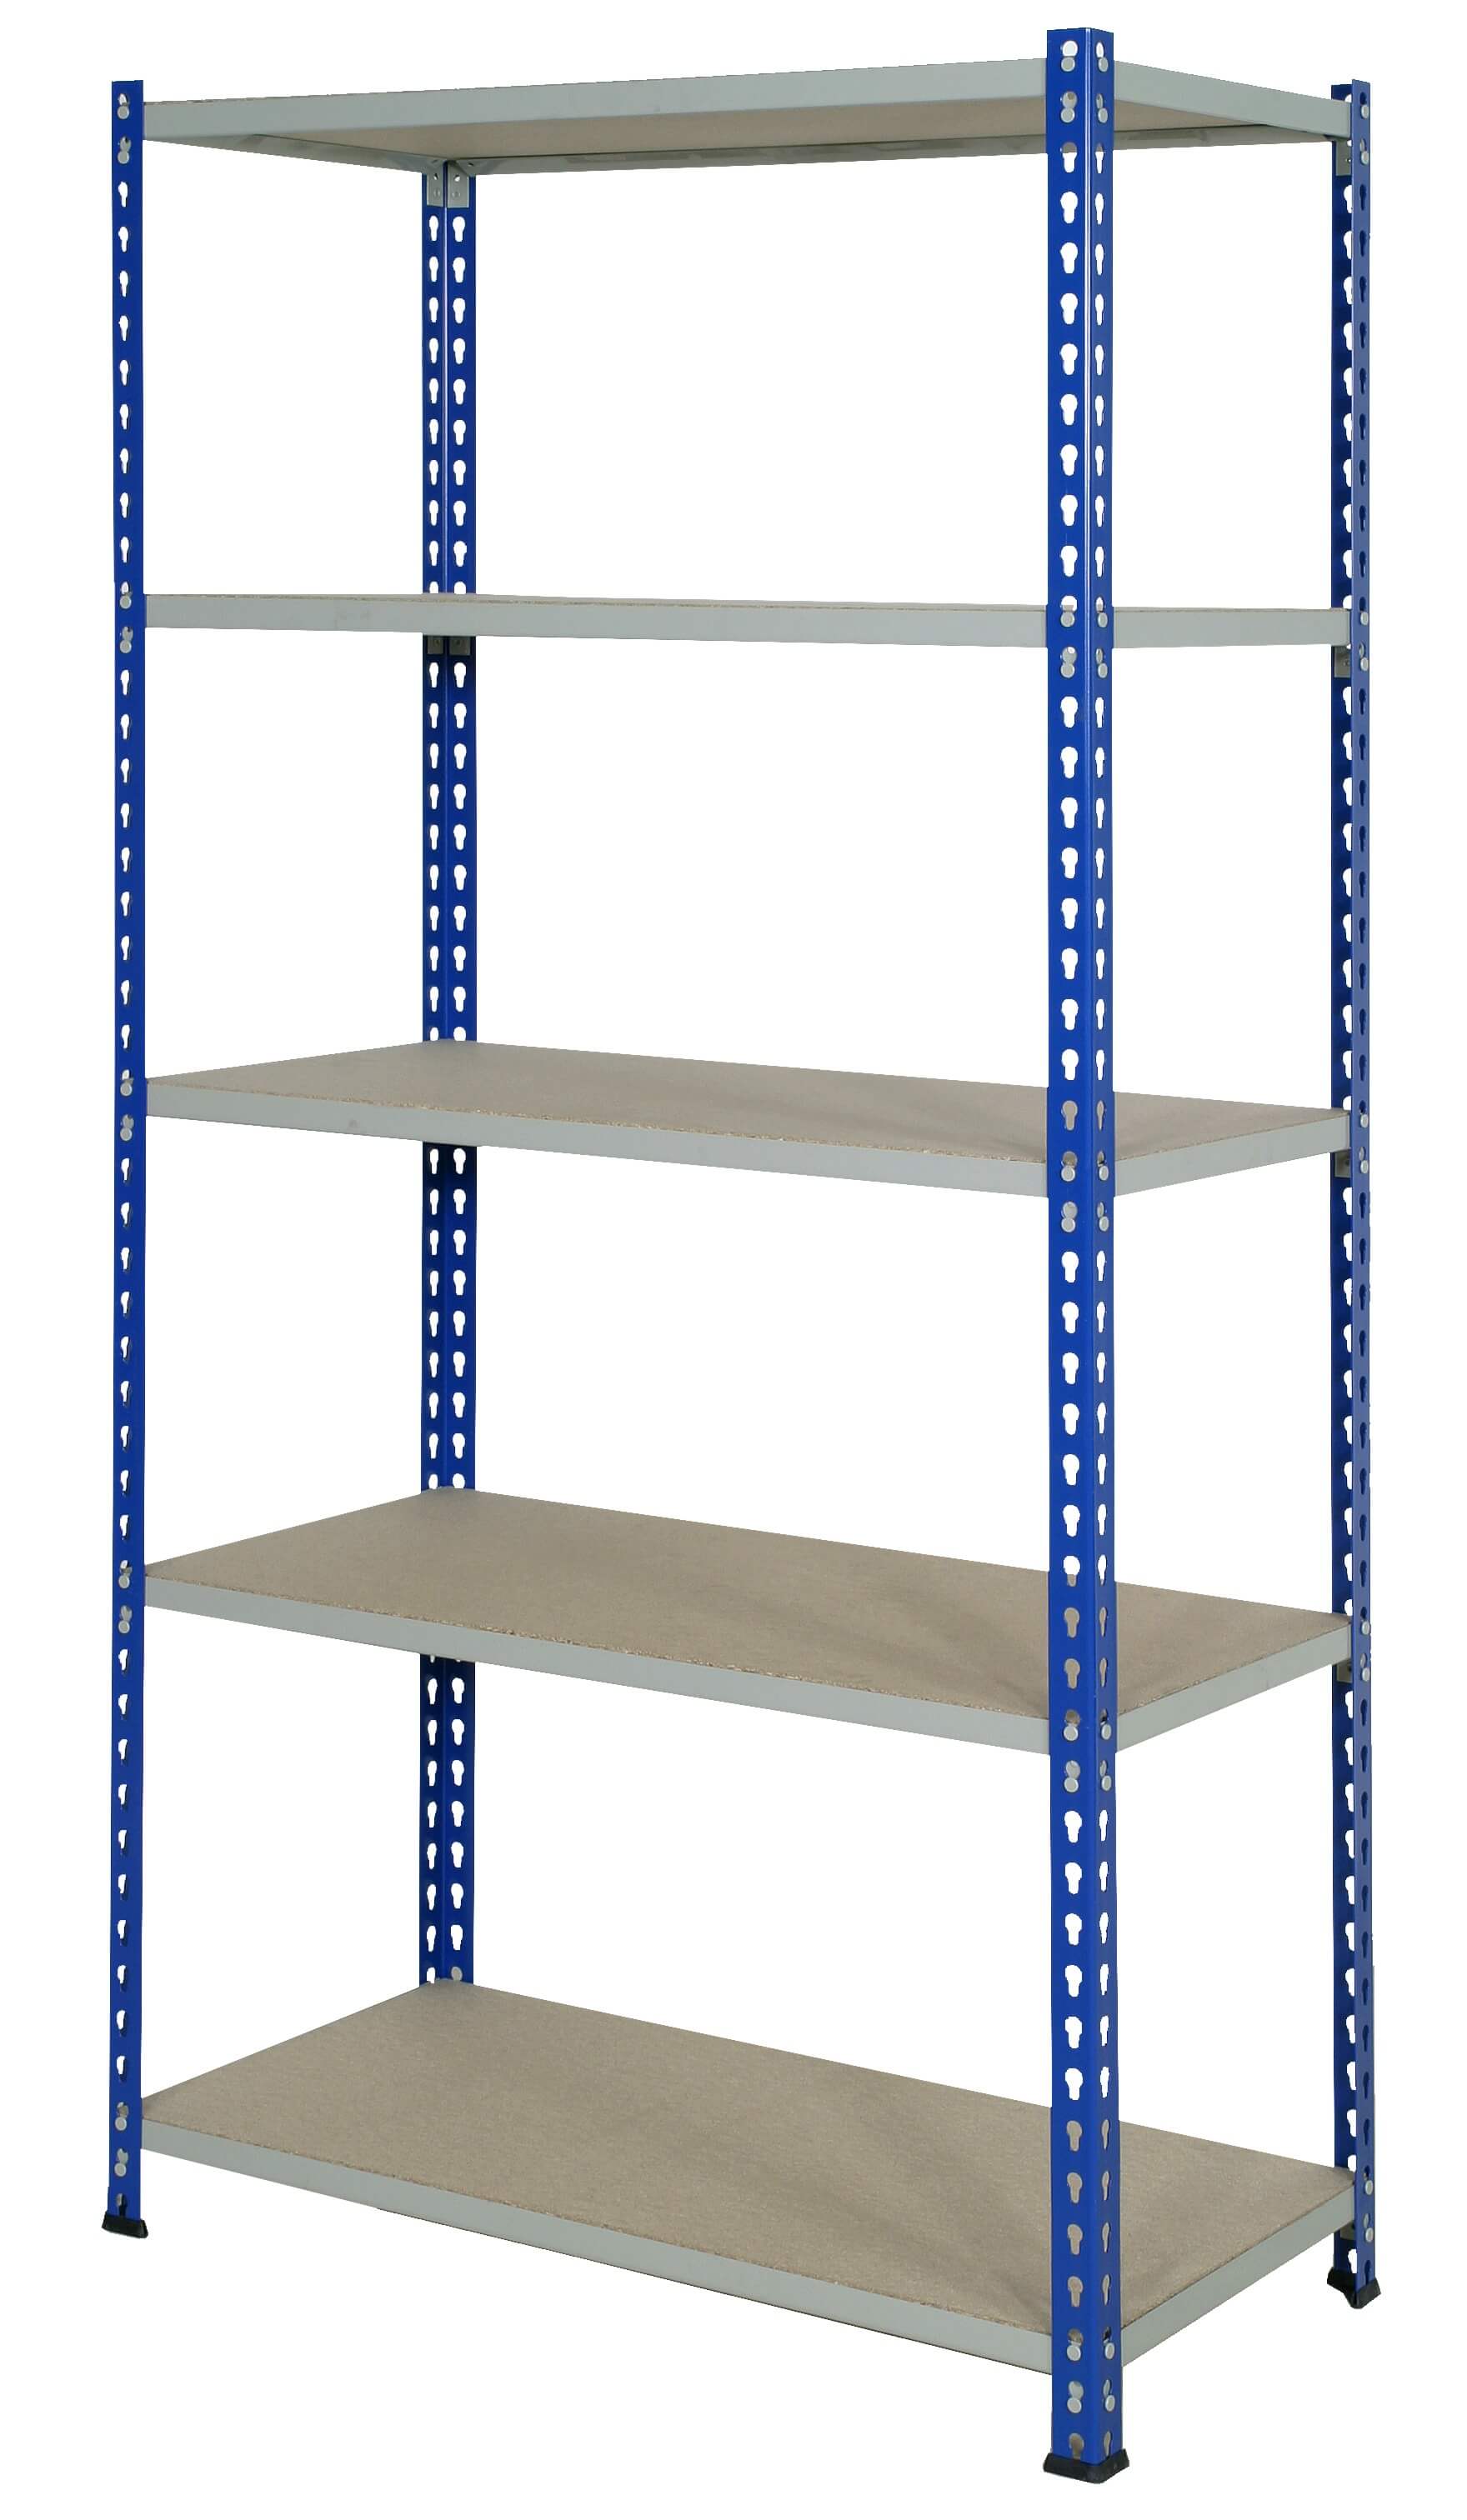 J Rivet Shelving, Blue/Grey 4 Shelves - 1830x915x305mm - 150kg UDL.